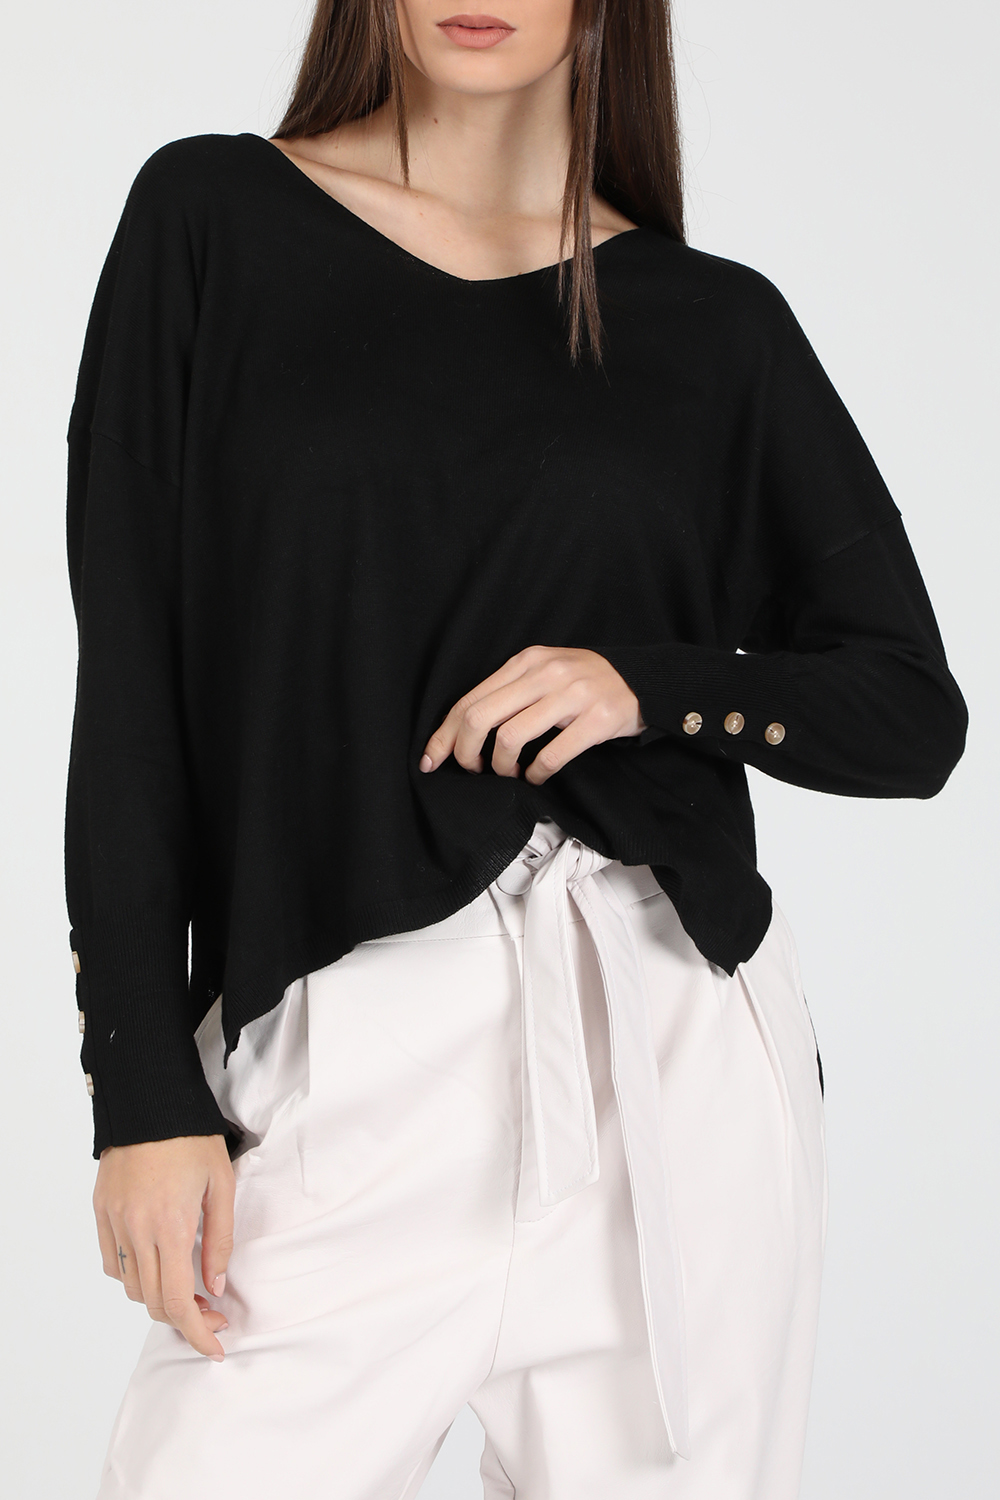 Γυναικεία/Ρούχα/Μπλούζες/Μακρυμάνικες GRACE AND MILA - Γυναικεία φούτερ μπλούζα GRACE AND MILA DAKOTA μαύρη